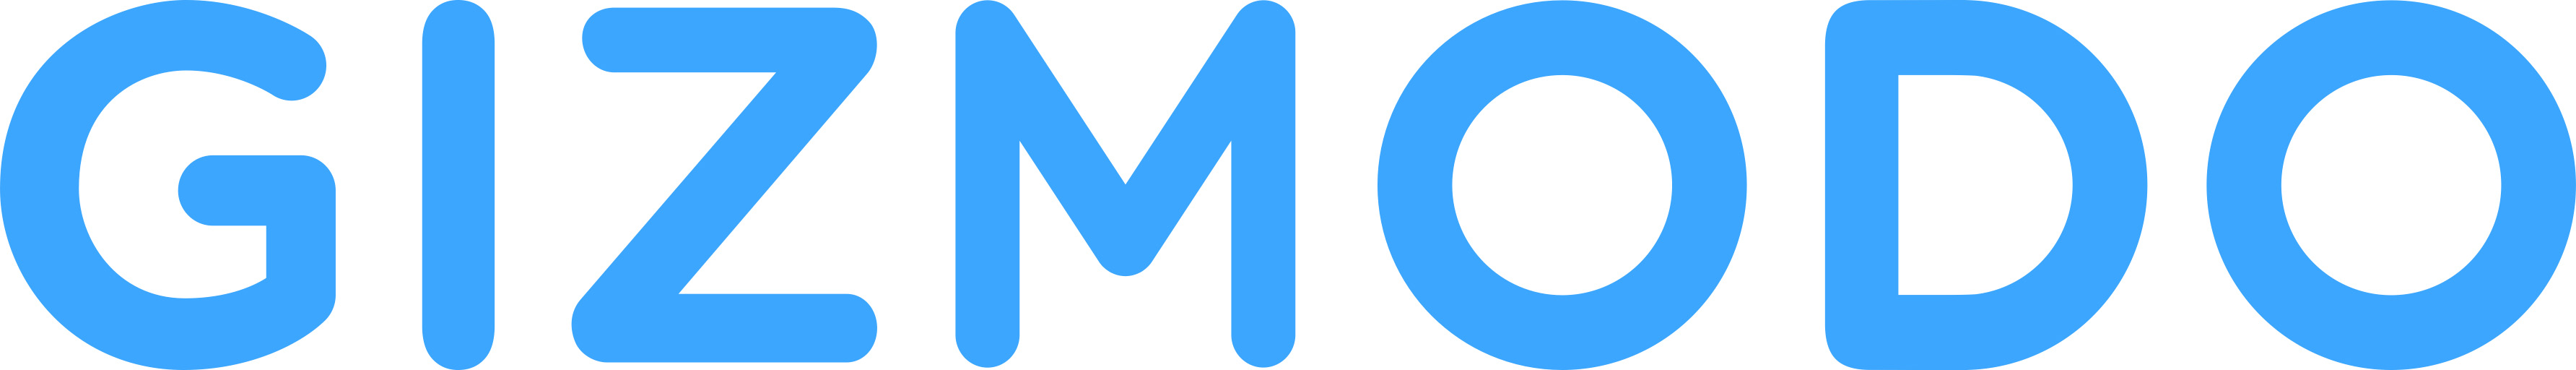 Gizmodo logo - color